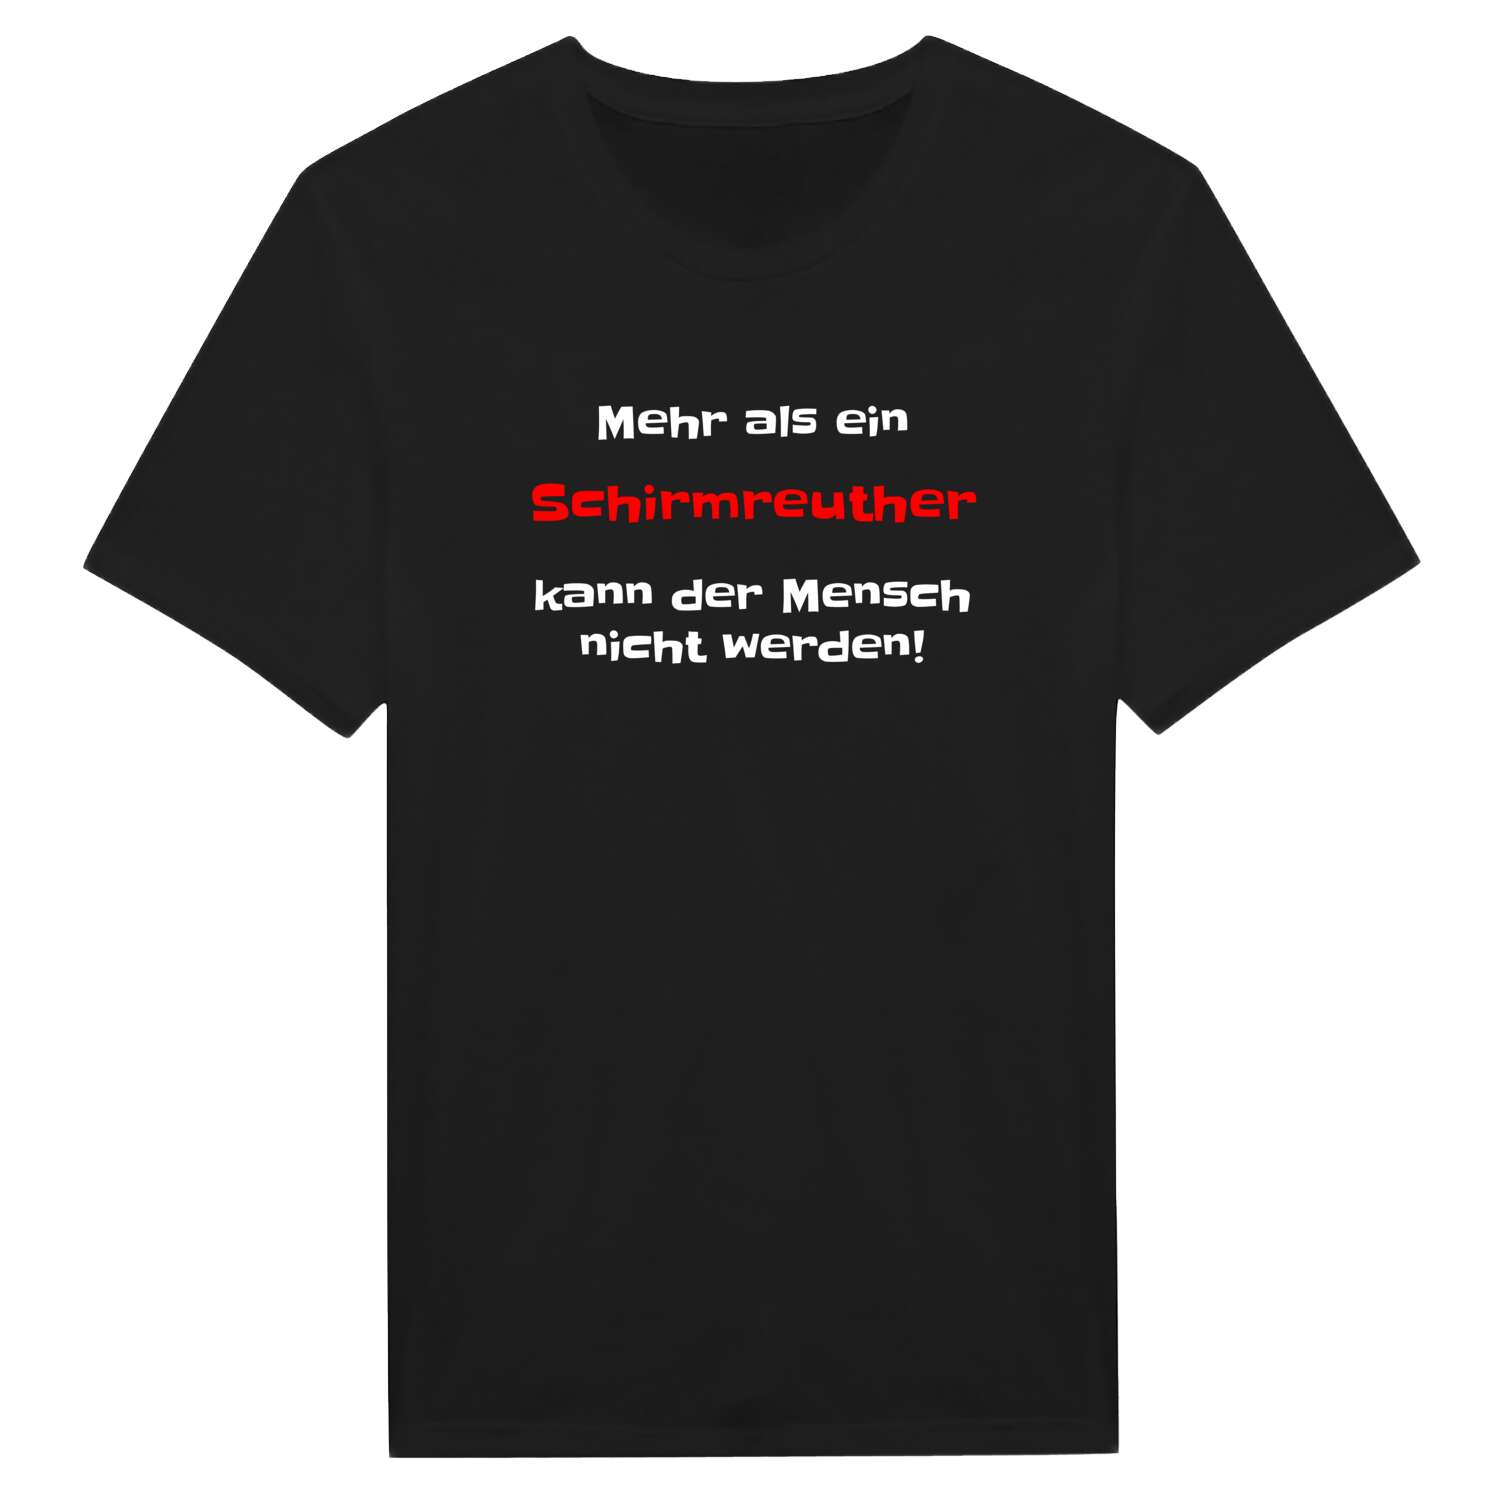 Schirmreuth T-Shirt »Mehr als ein«